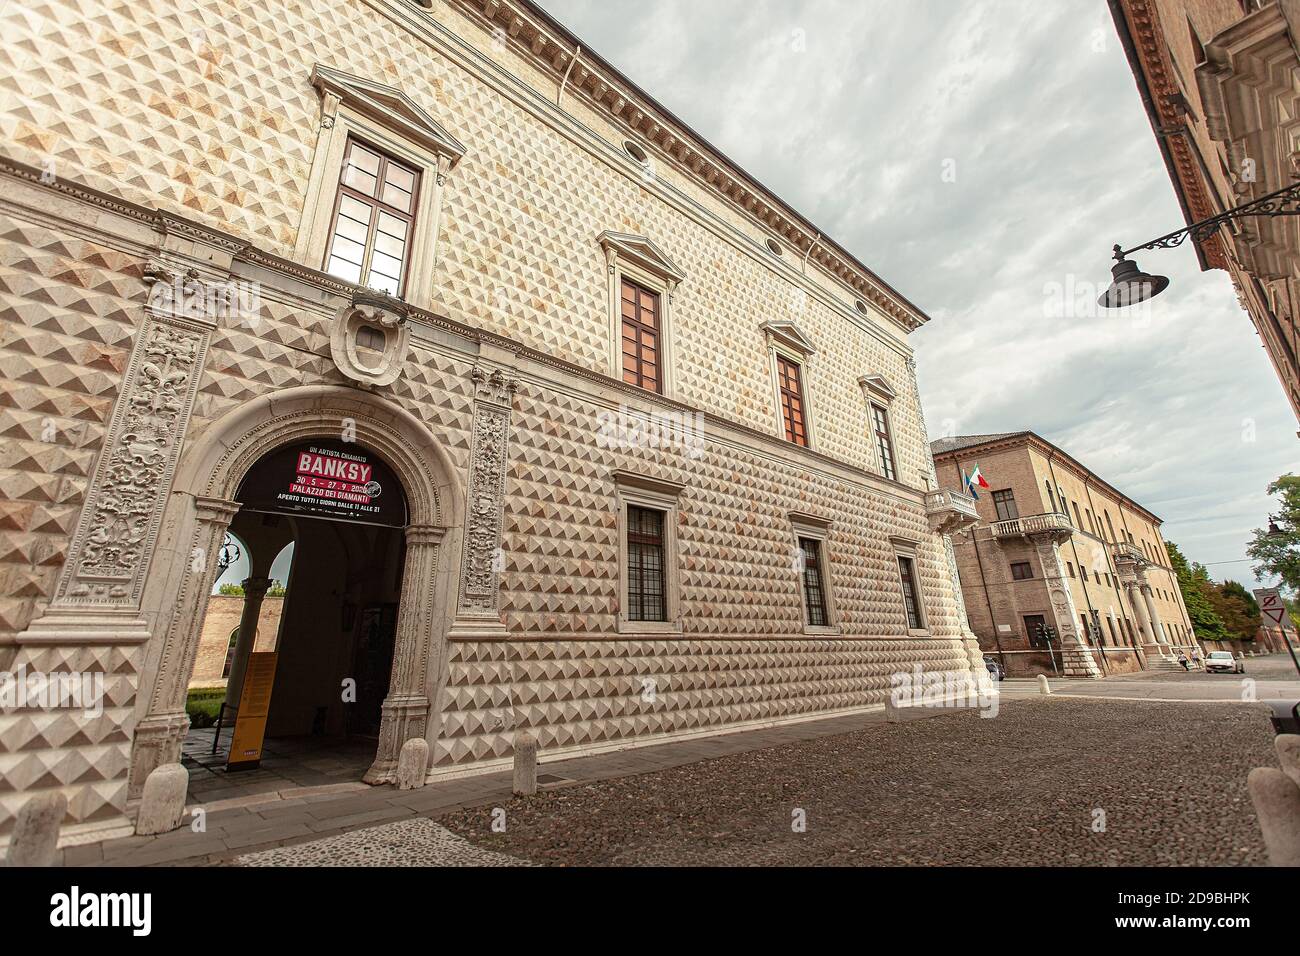 FERRARA, ITALIA 29 LUGLIO 2020 : veduta di Palazzo dei Diamanti a Ferrara in Italia un famoso edificio storico della città italiana Foto Stock